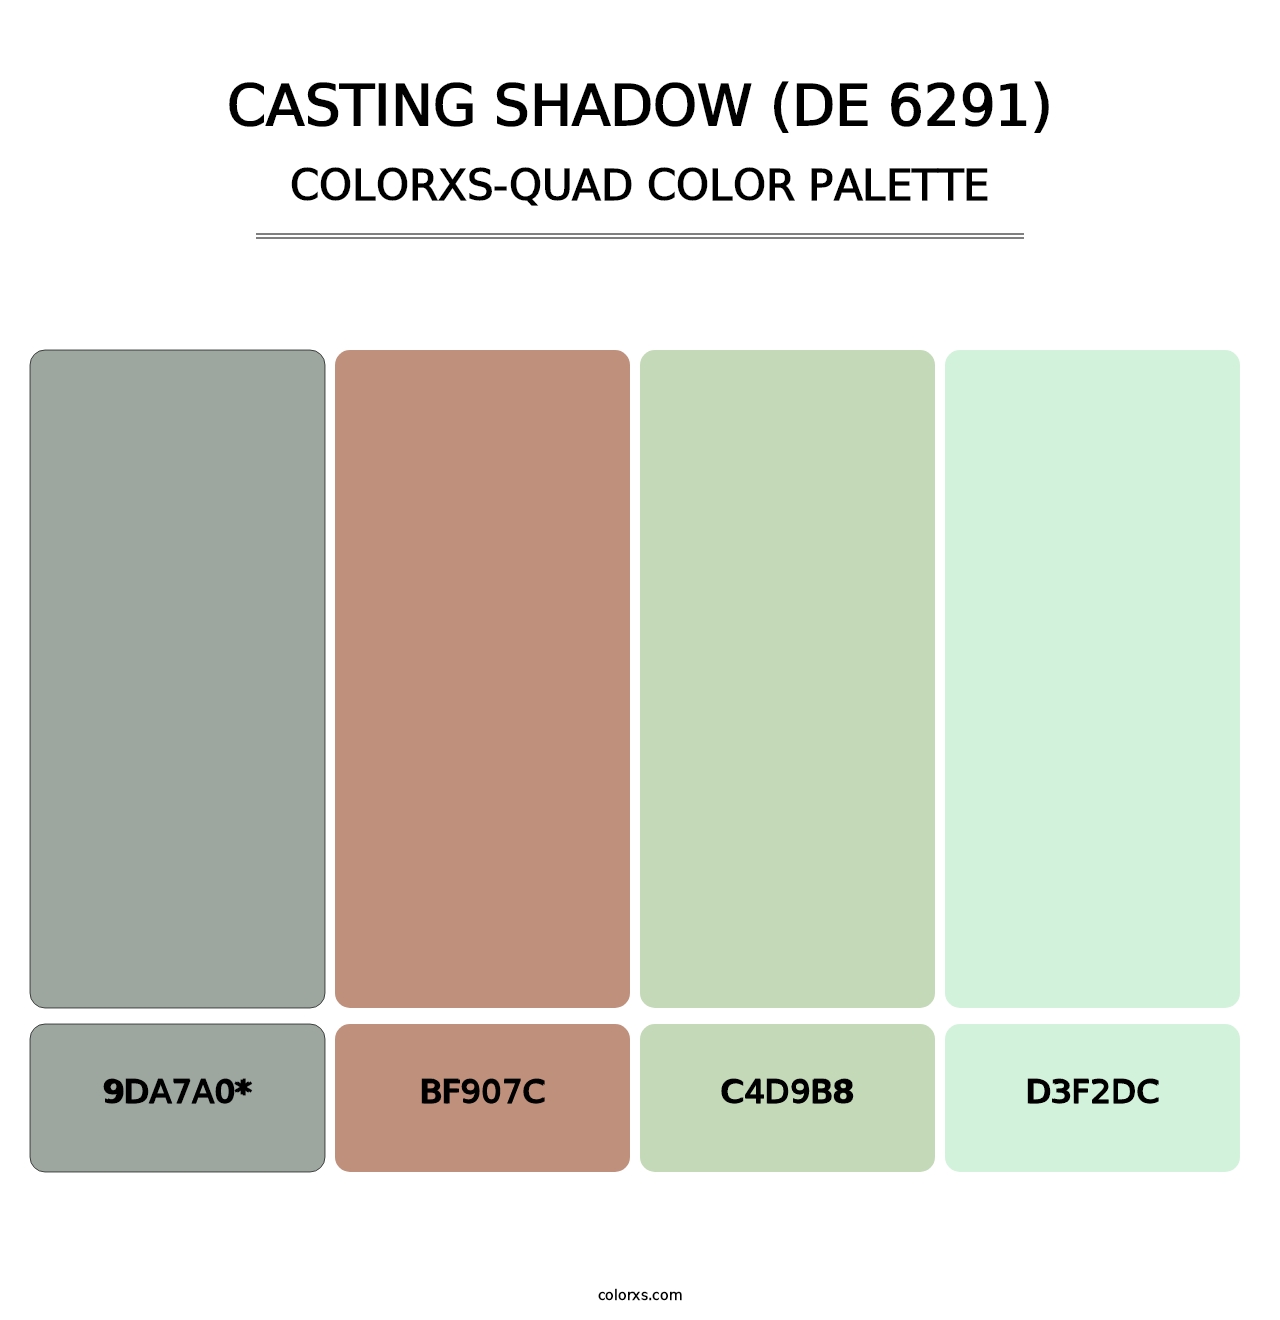 Casting Shadow (DE 6291) - Colorxs Quad Palette